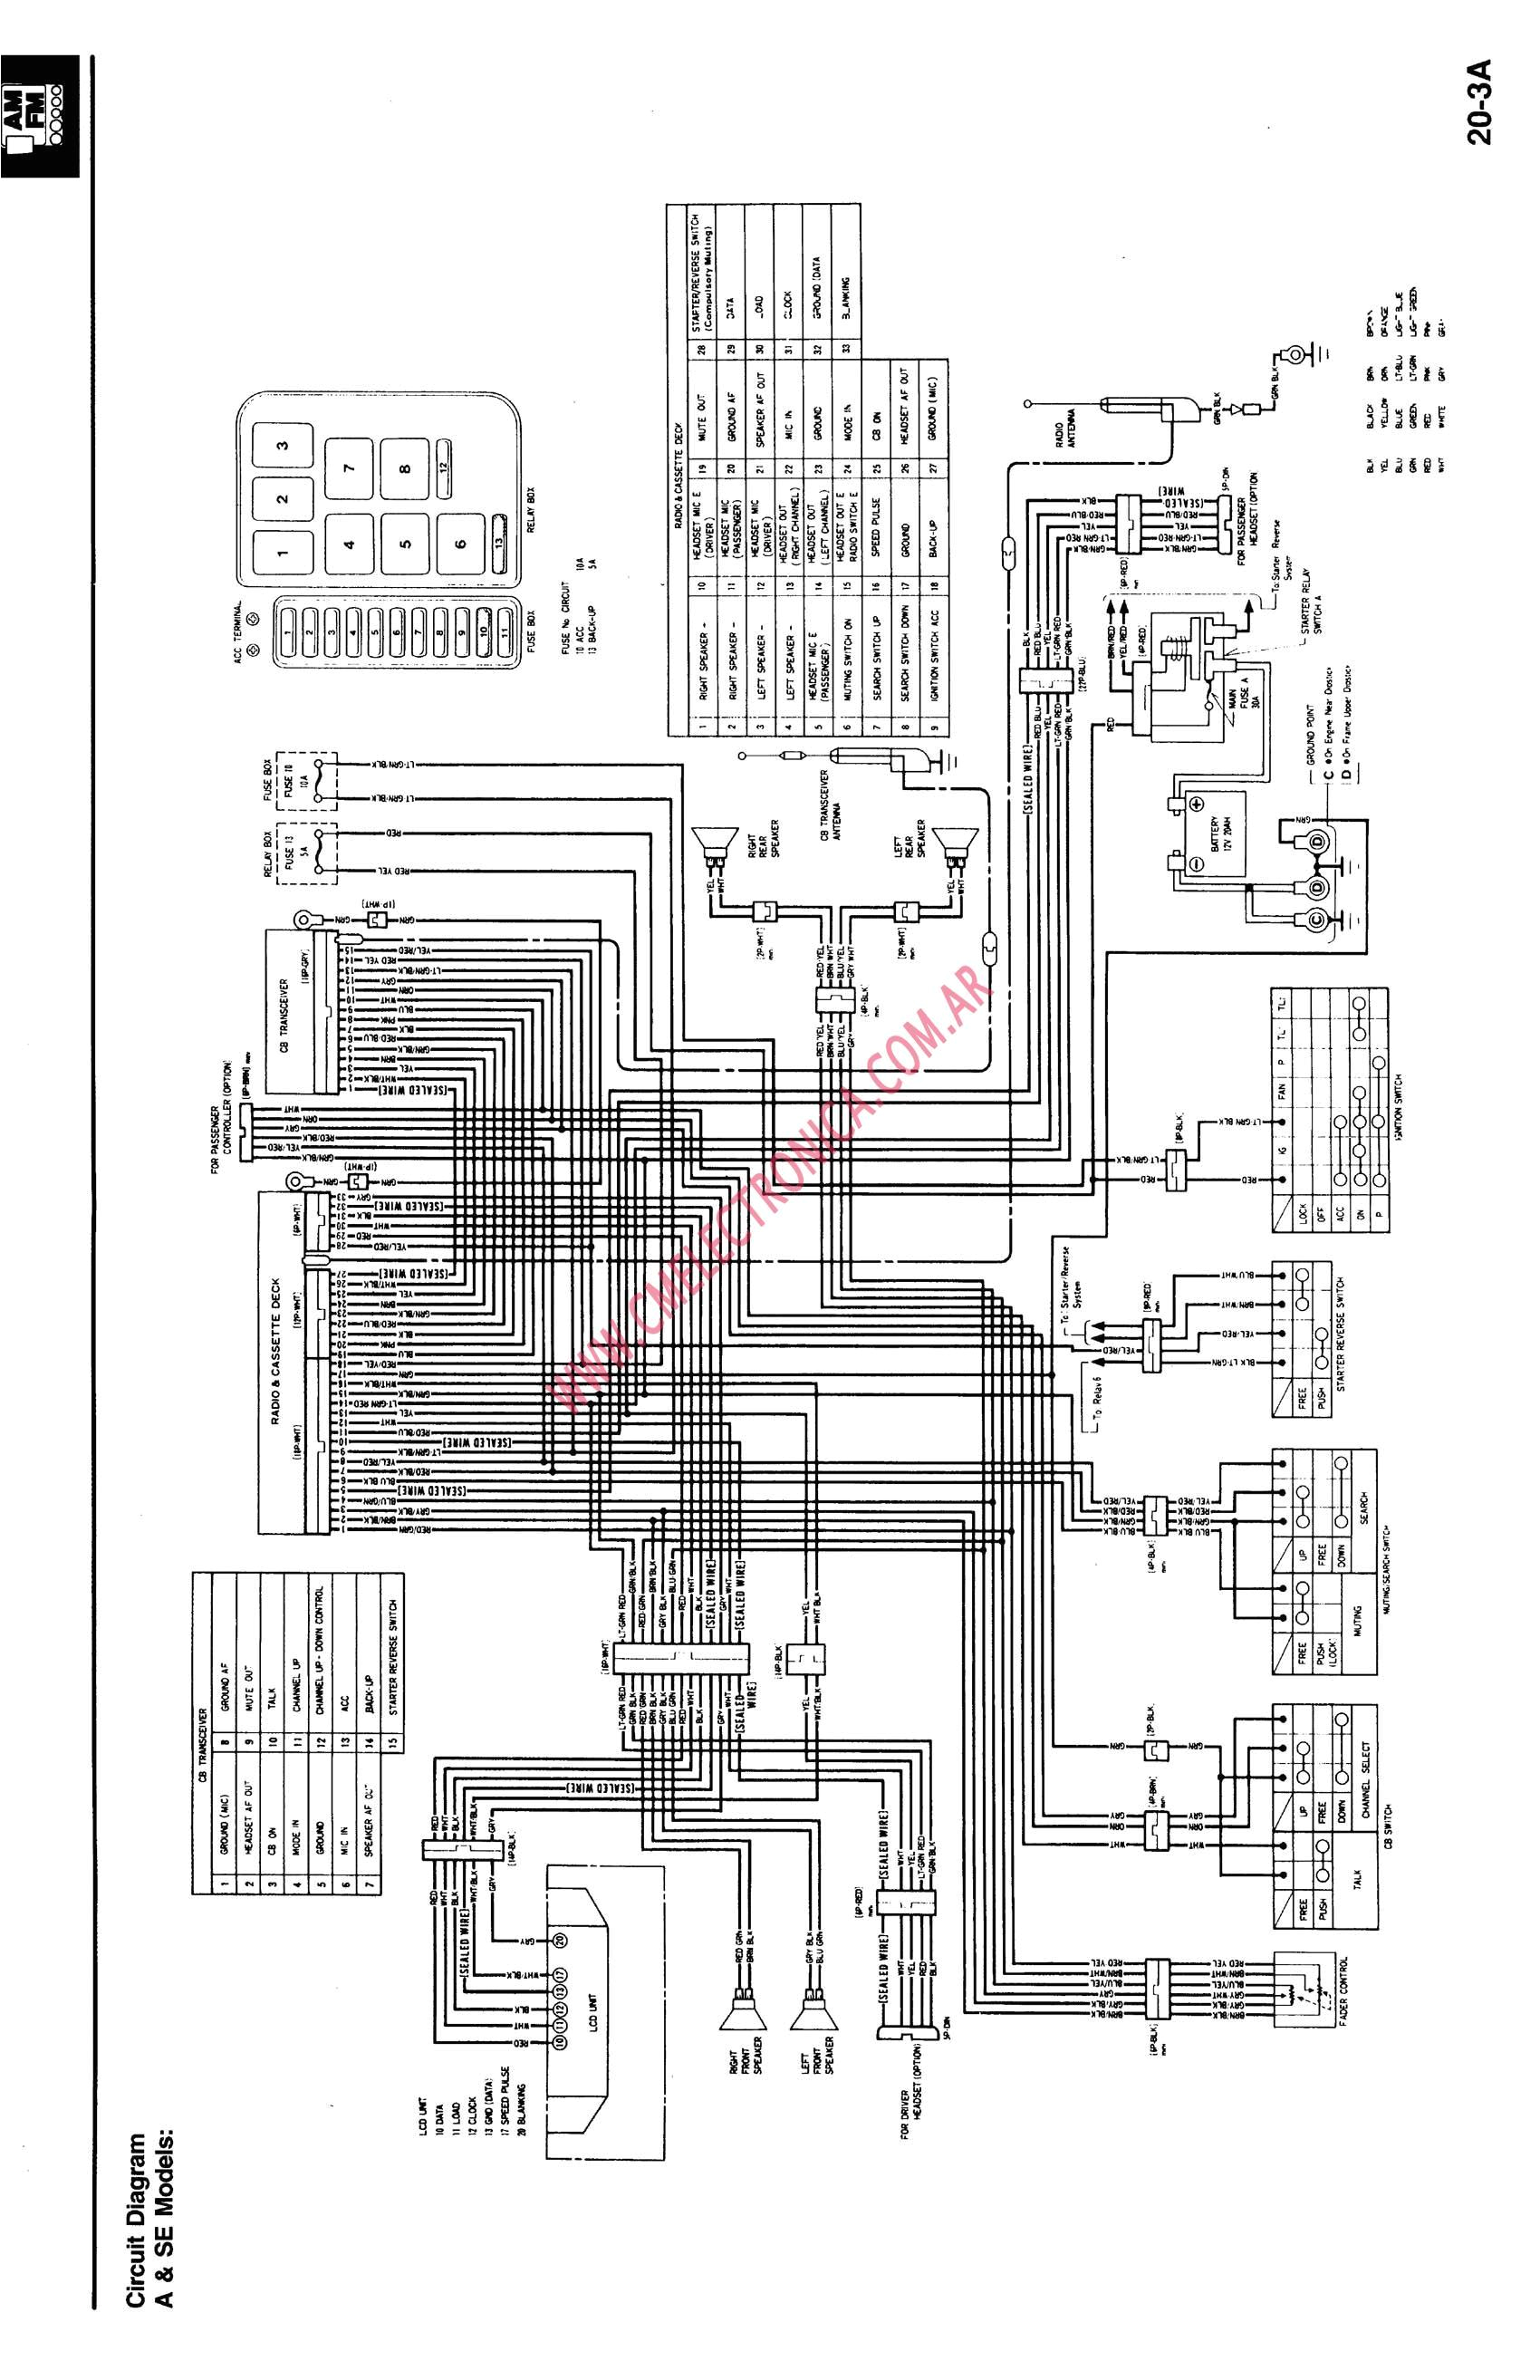 1992 gl1500 wiring diagram wiring diagramgl1500 radio wiring wiring diagram technicgl1500 wiring diagram schema diagram databasegl1500